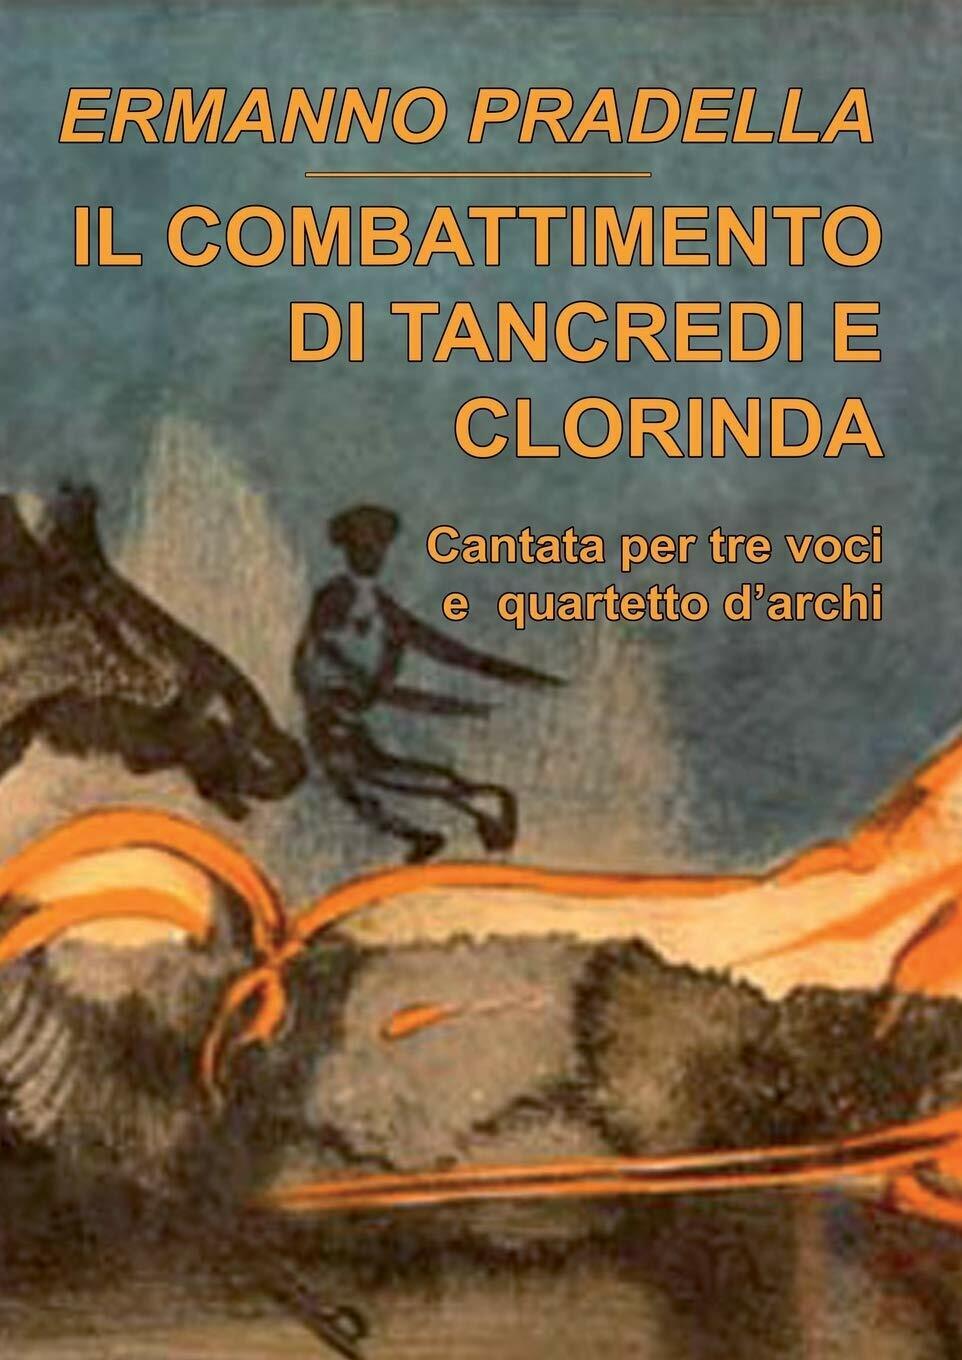 Il combattimento di Tancredi e Clorinda - Ermanno Pradella - Lulu.com, 2014